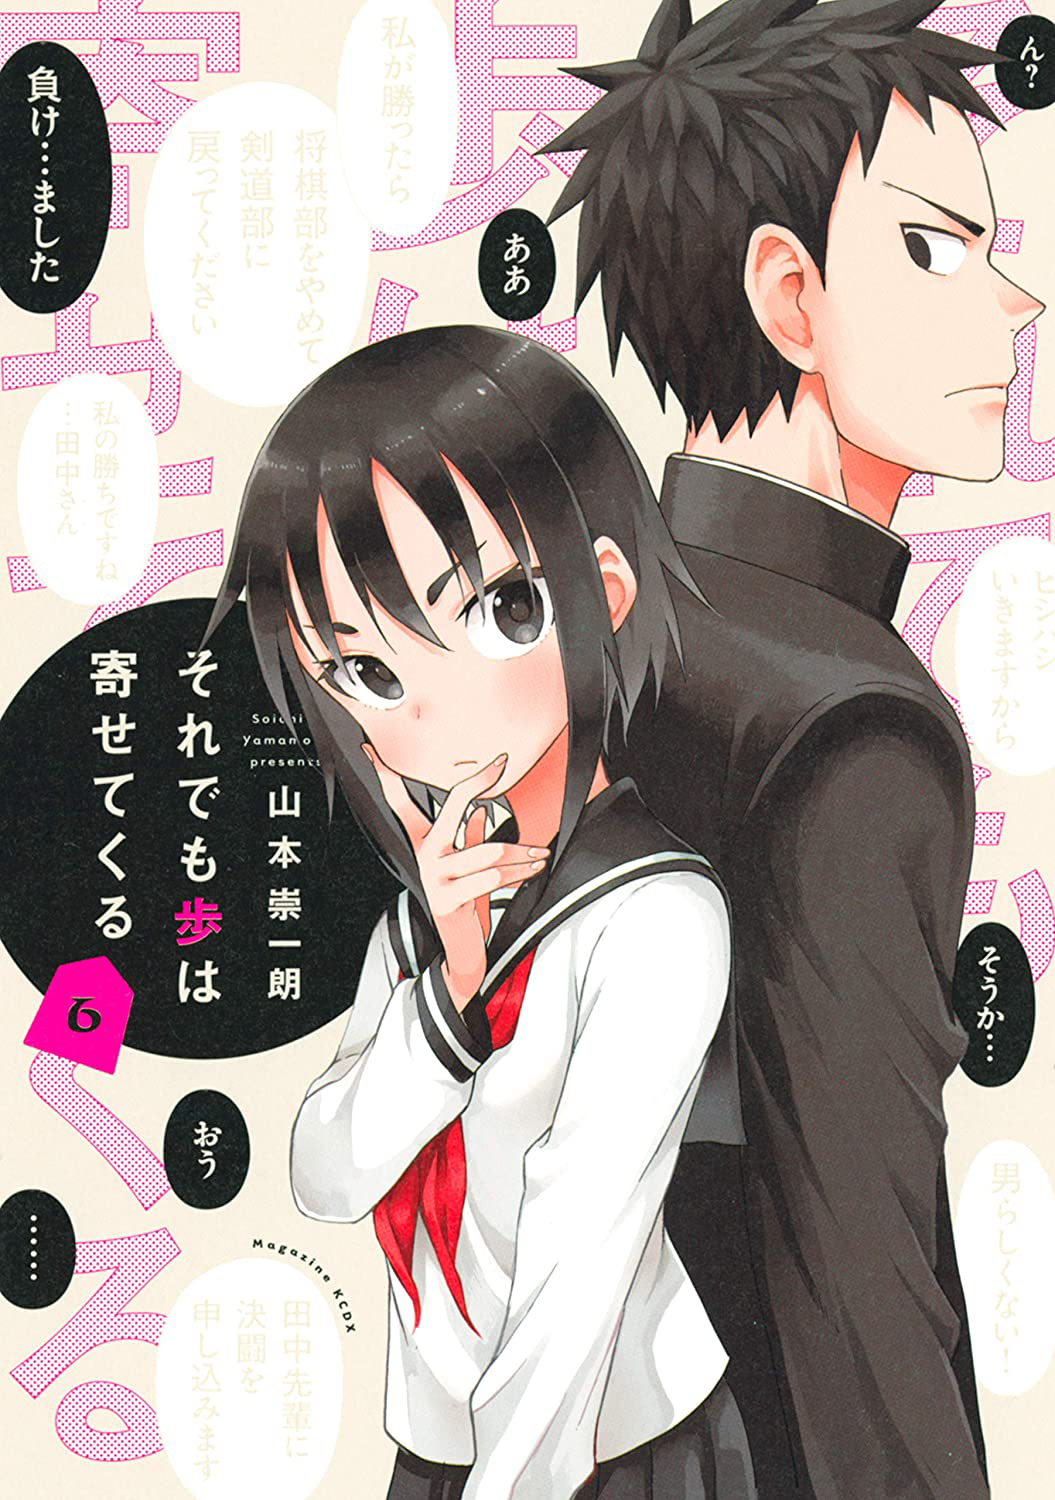 ART] Urushi, The Maiden in Love (Soredemo Ayumu wa Yosetekuru) : r/manga